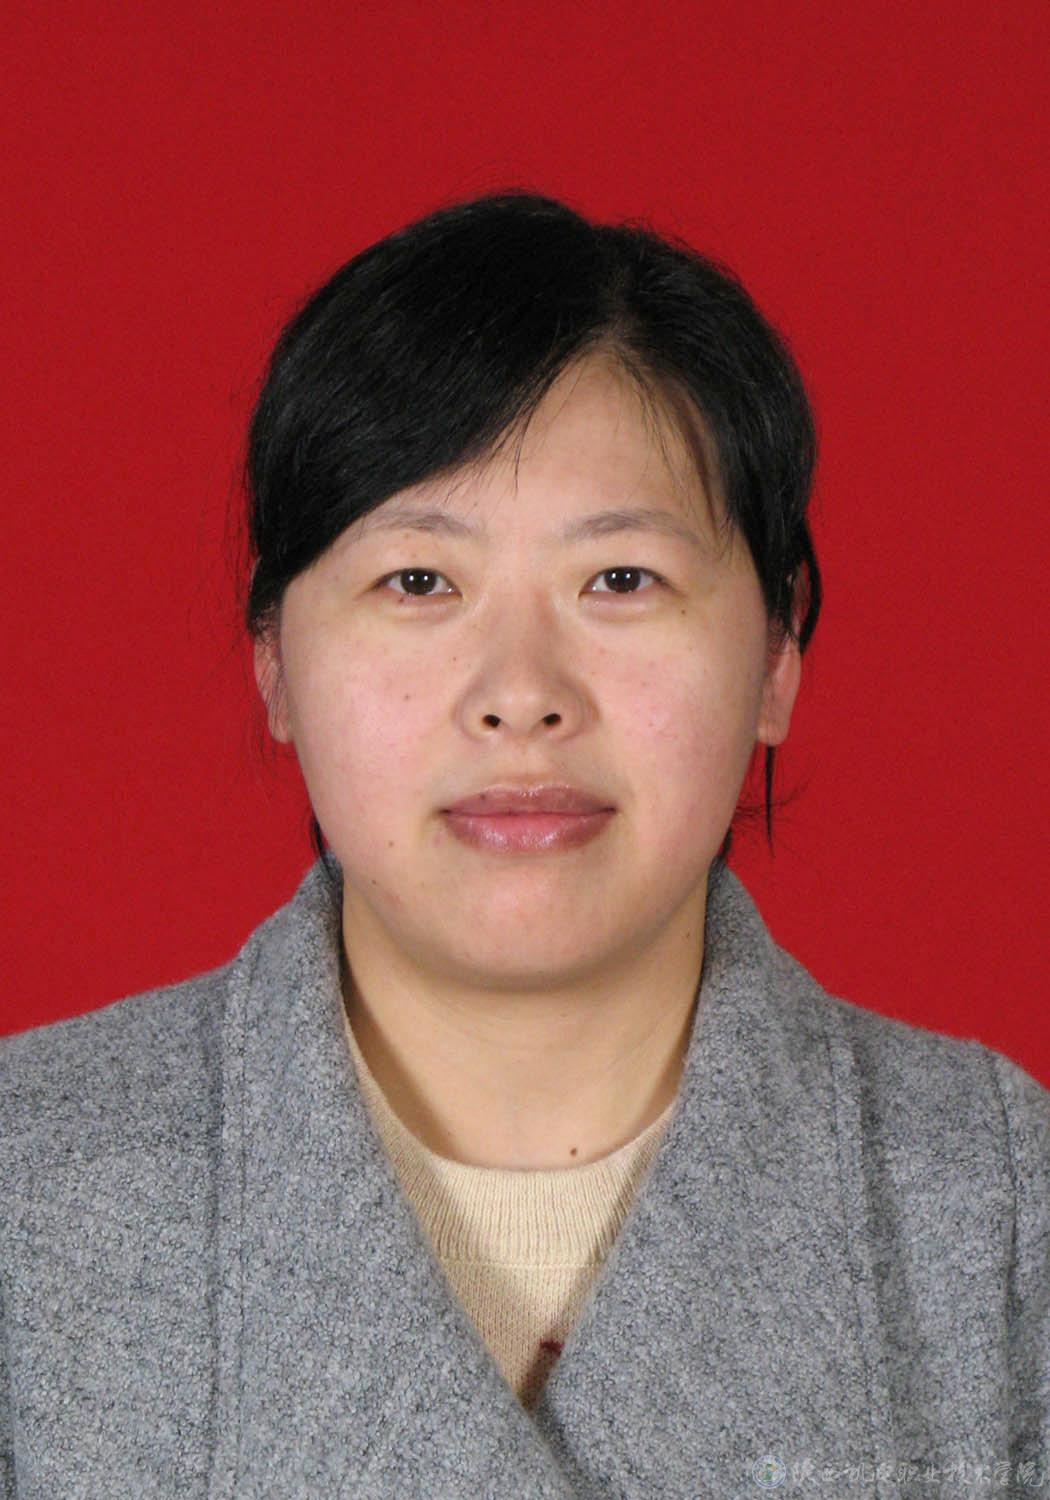 刘娟,女,1981年生,2007年毕业于陕西科技大学化工过程机械专业,获硕士